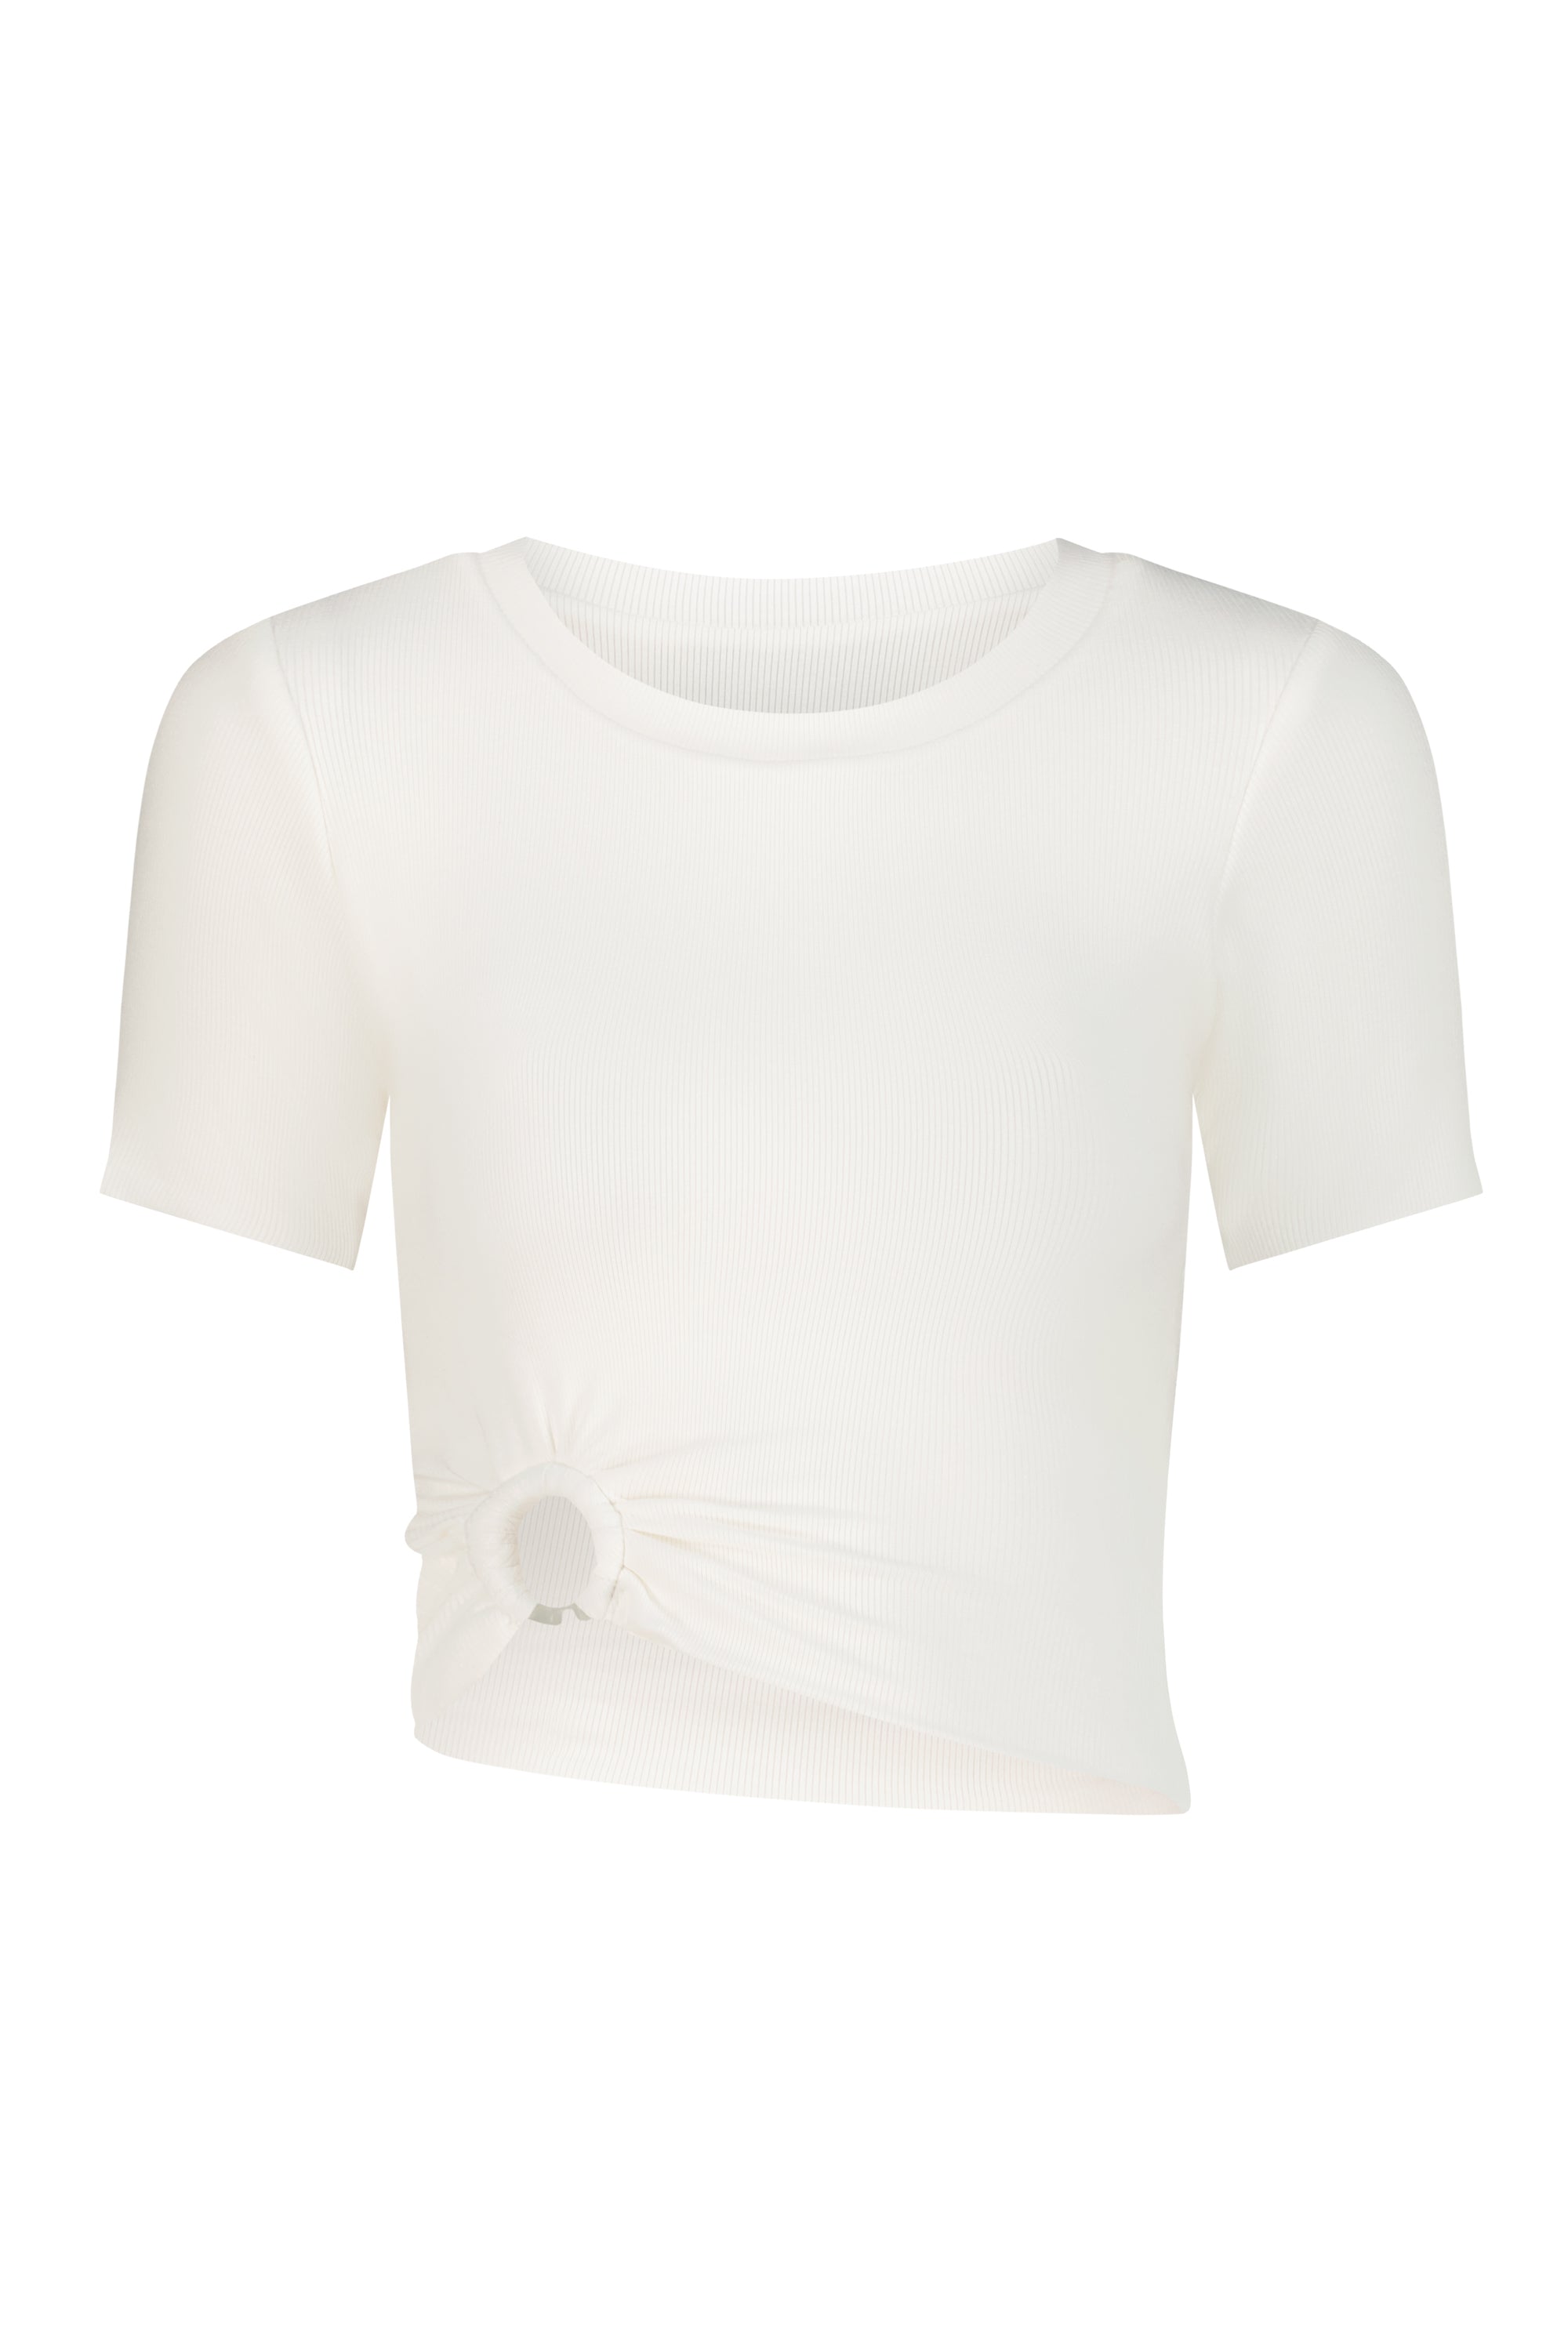 Selene T-Shirt White